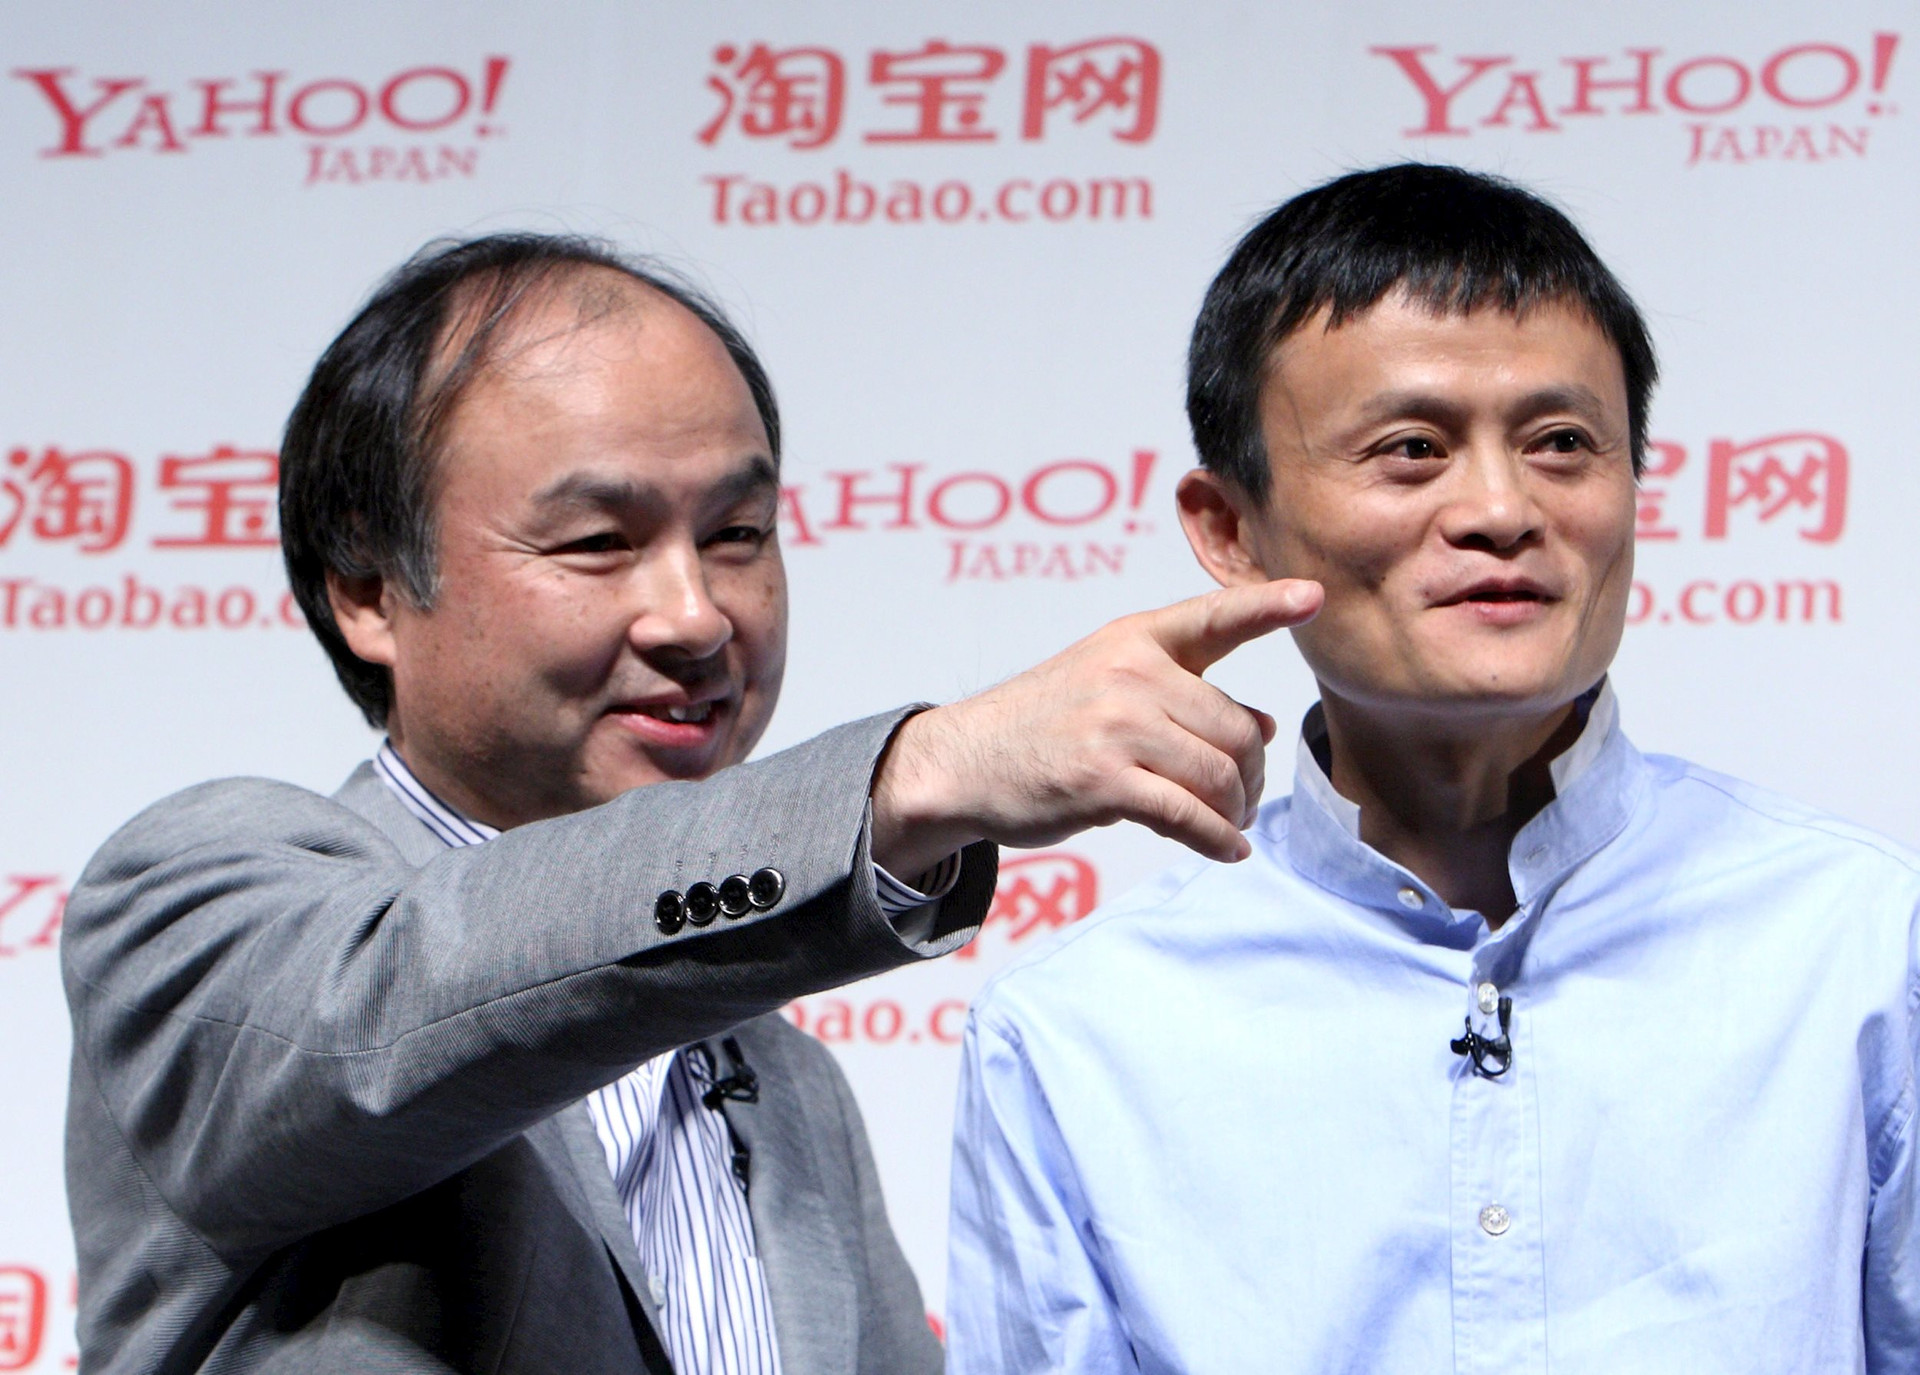 Tạm biệt Alibaba, Masayoshi Son nhắm mục tiêu mới: Phòng thủ hơn 1 năm mới rót vốn, tự tin sắp đón 'cuộc cách mạng tiếp theo' - Ảnh 1.